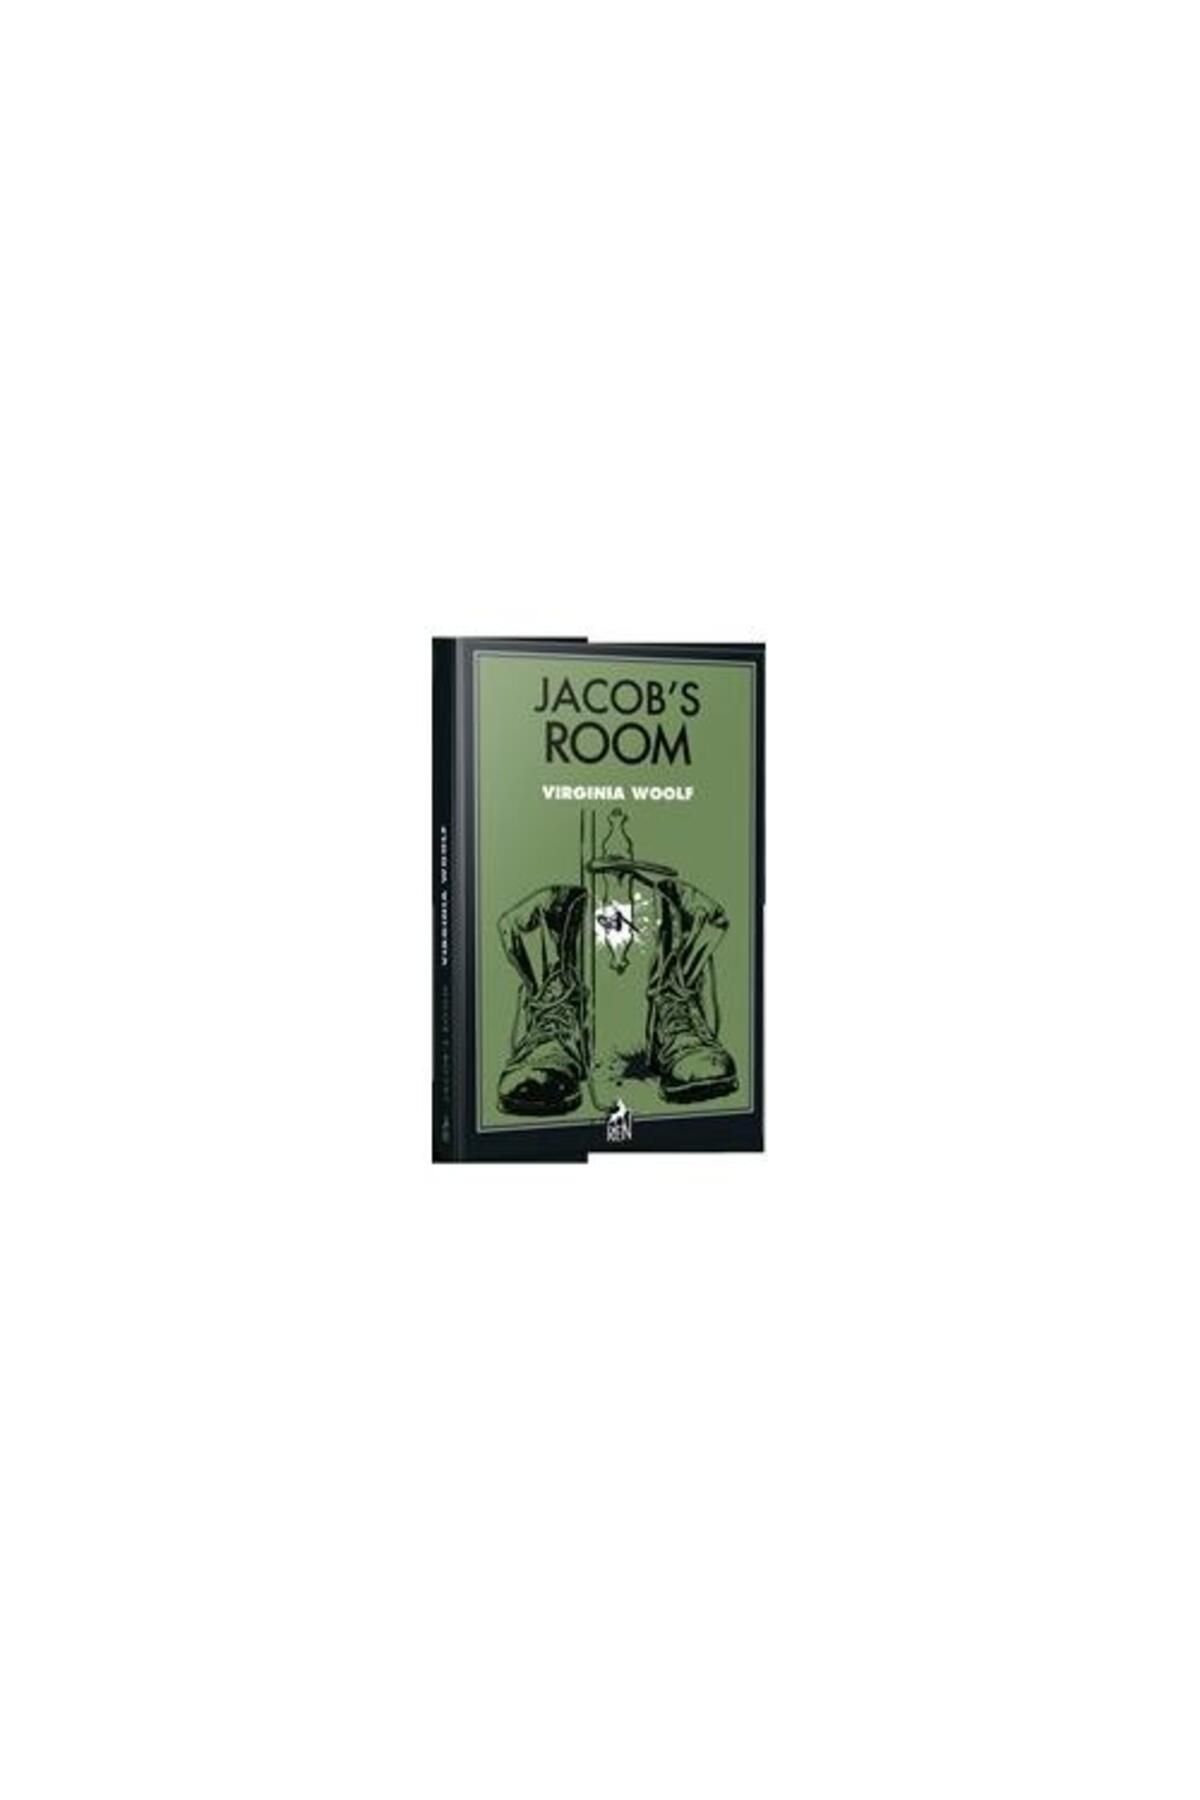 Ren Kitap Jacob's Room / Ren Kitap / Virginia Woolf